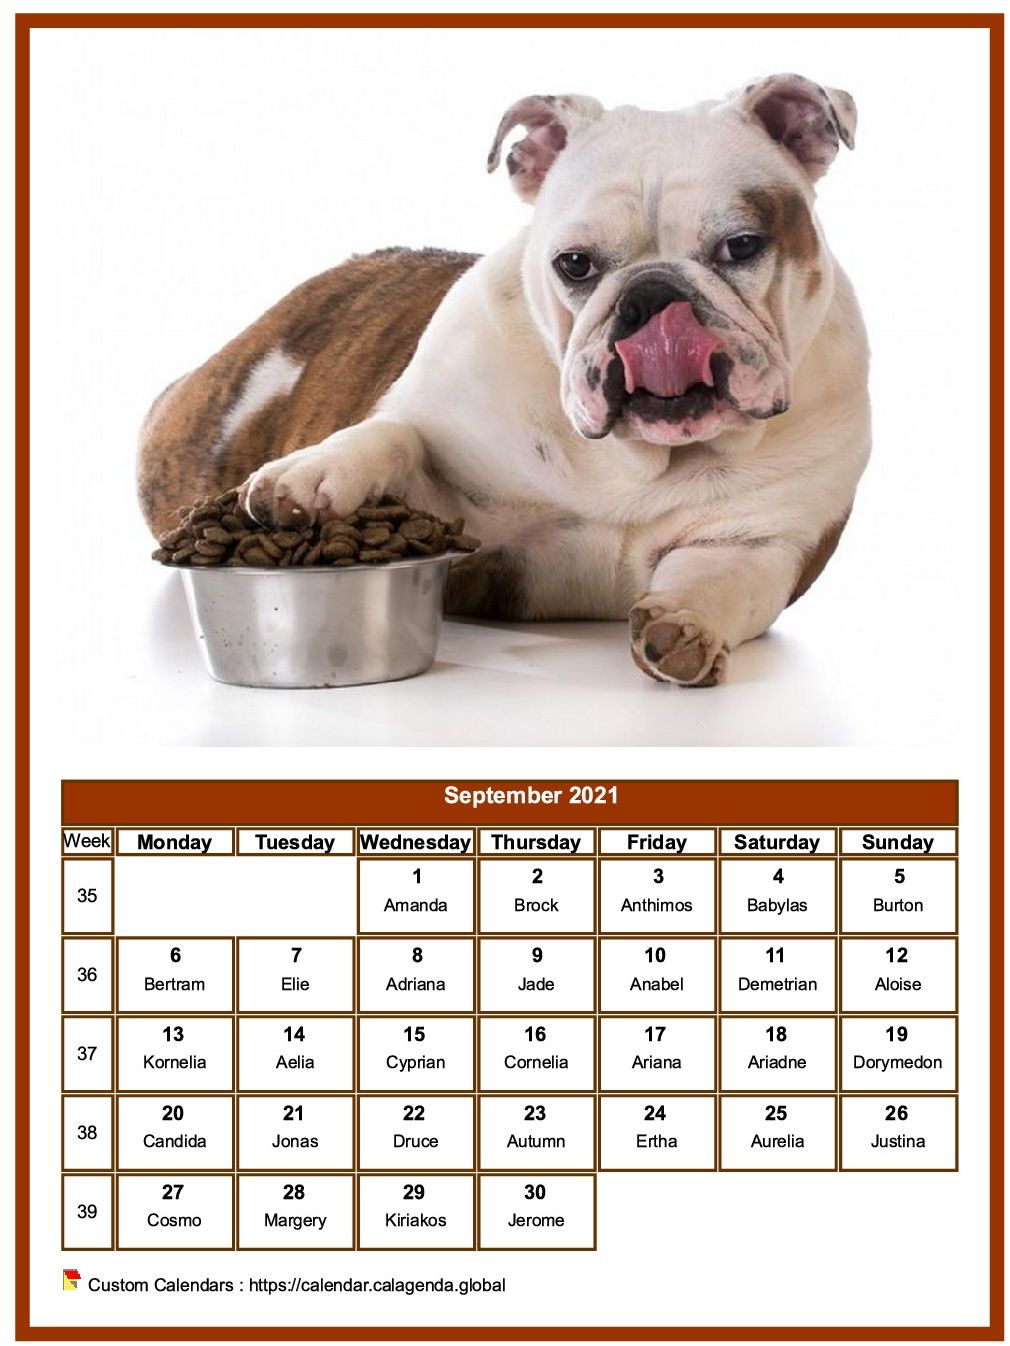 Calendar September 2021 dogs